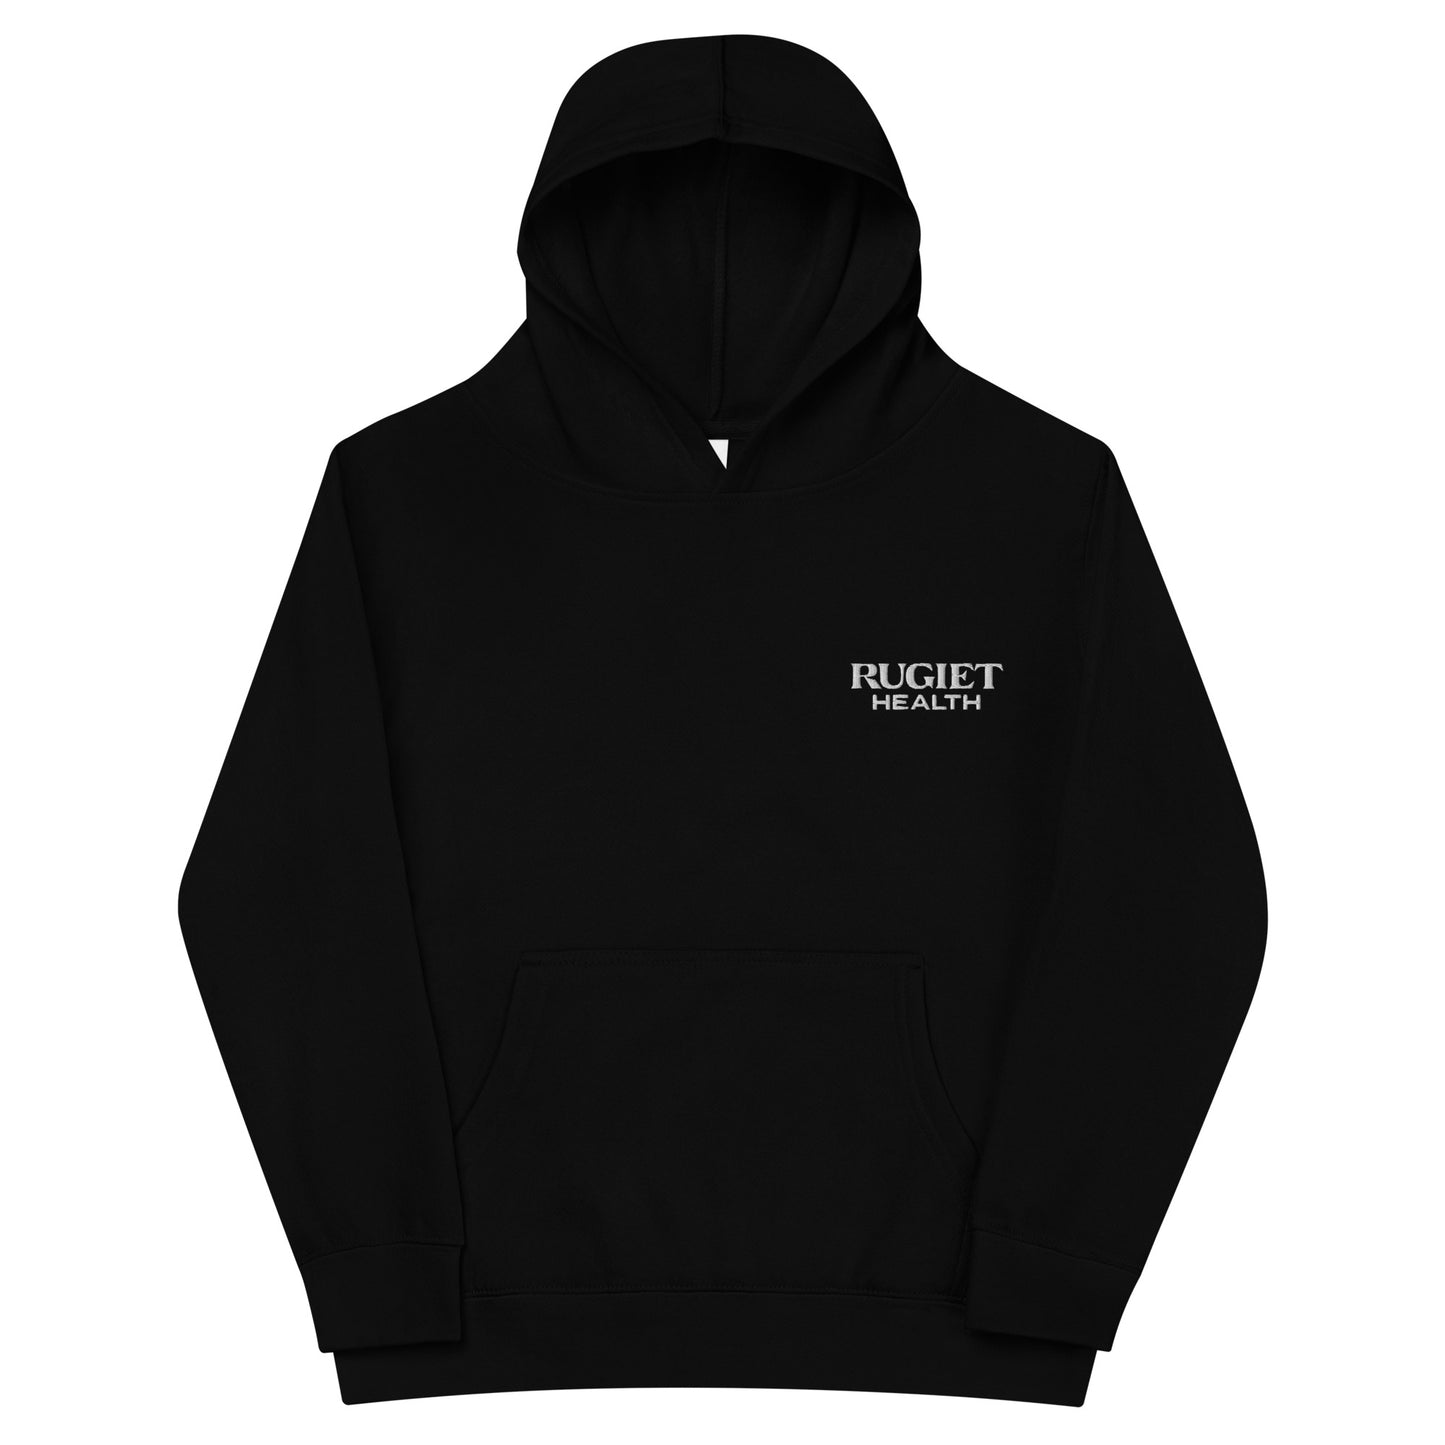 Kids fleece hoodie - Rugiet Health